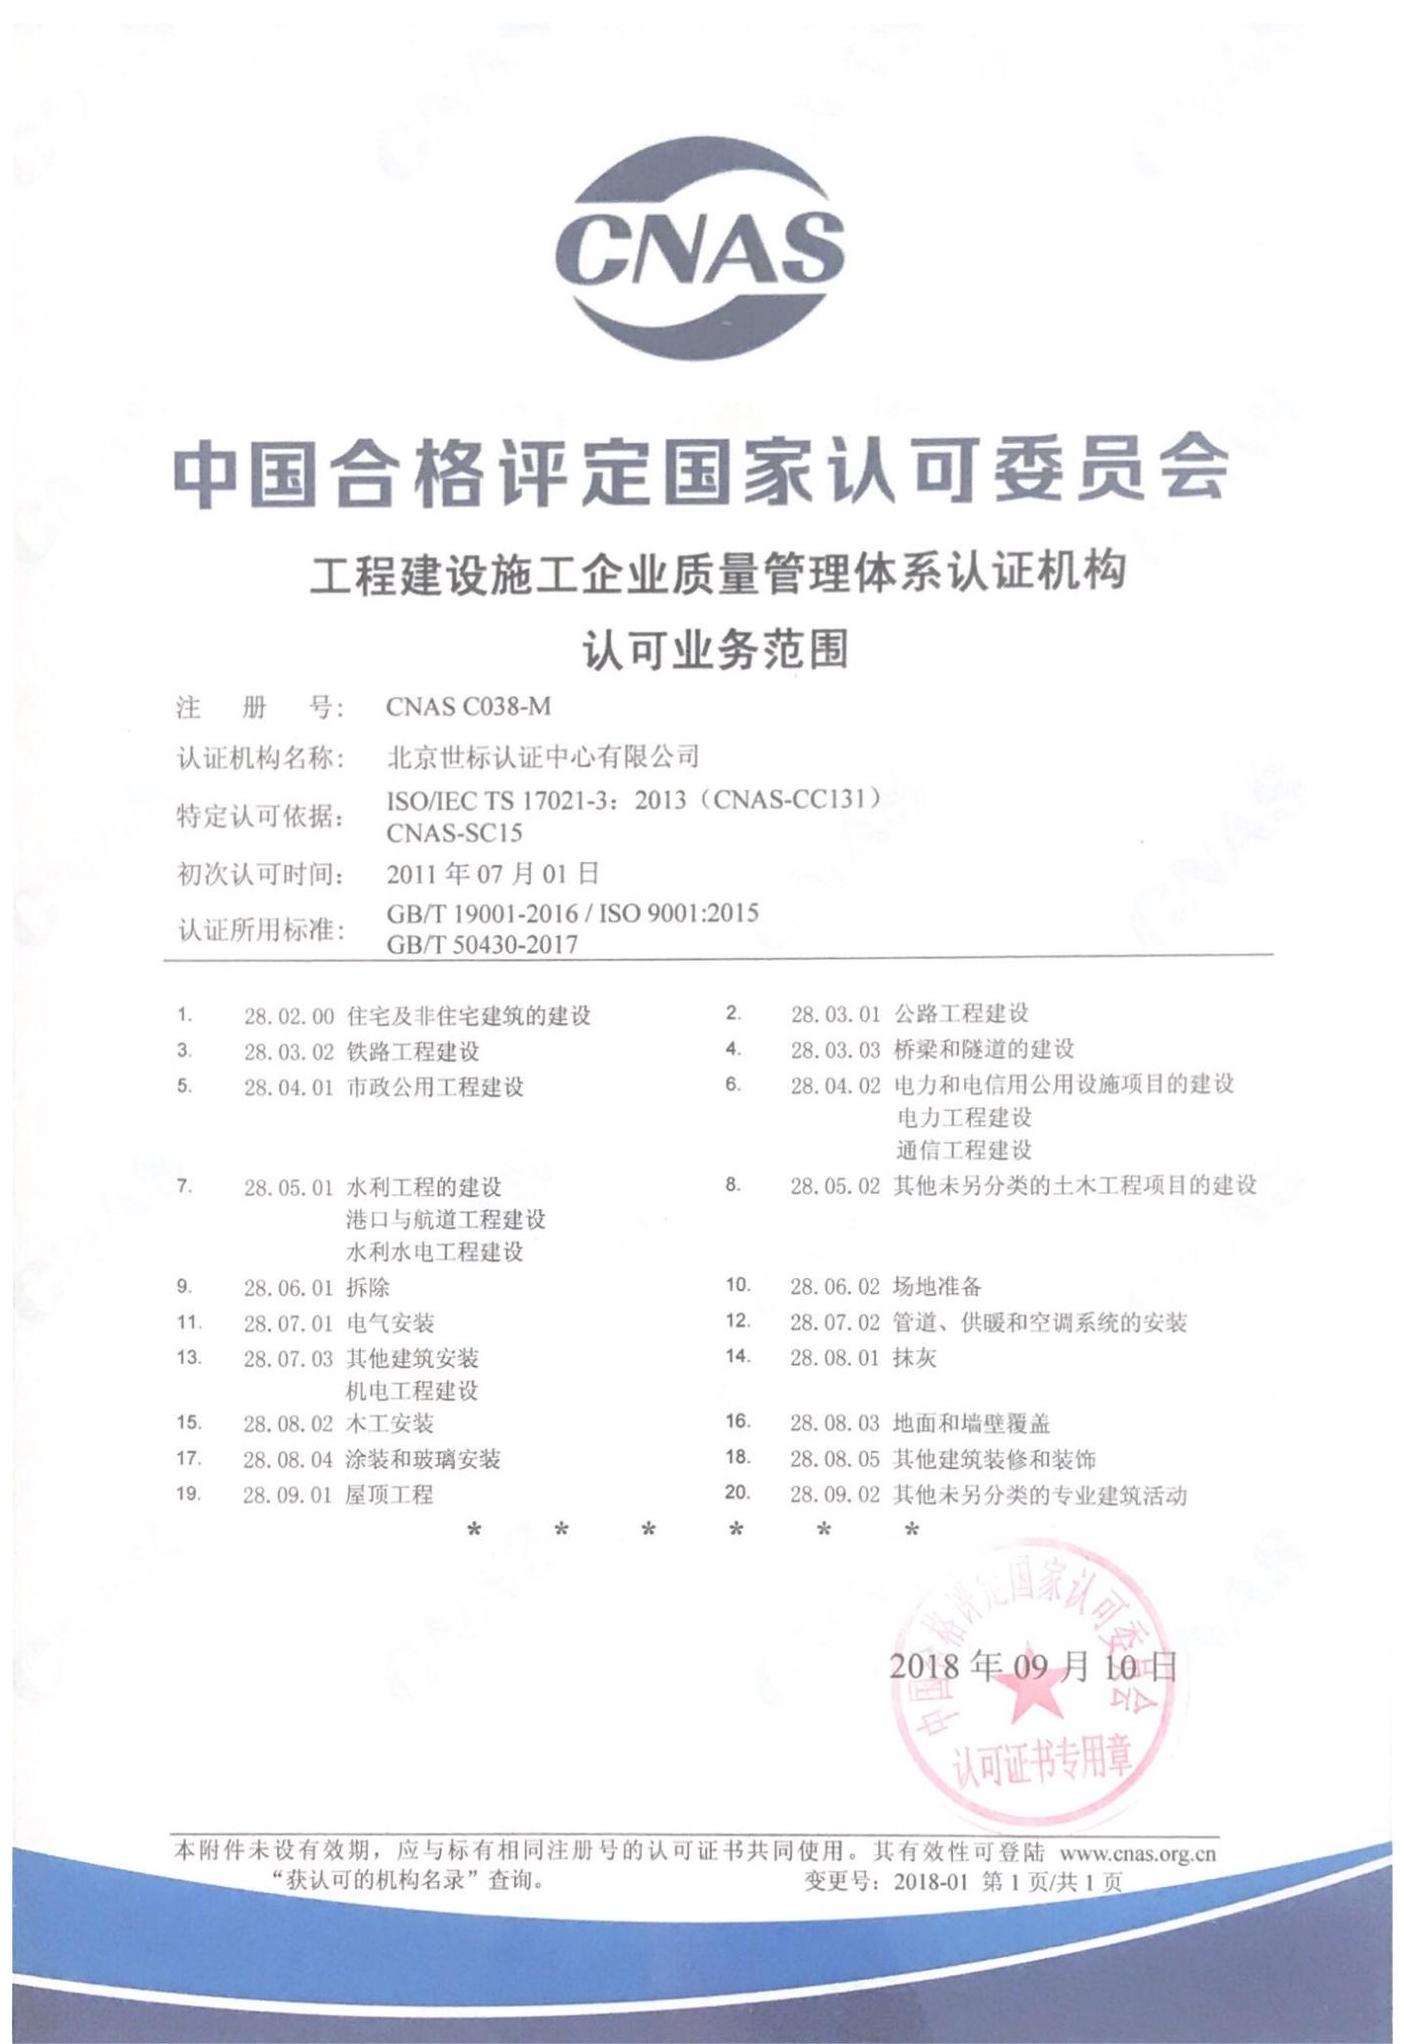 工程建设施工企业质量管理体系认证机构认可范围-中文_00.jpg